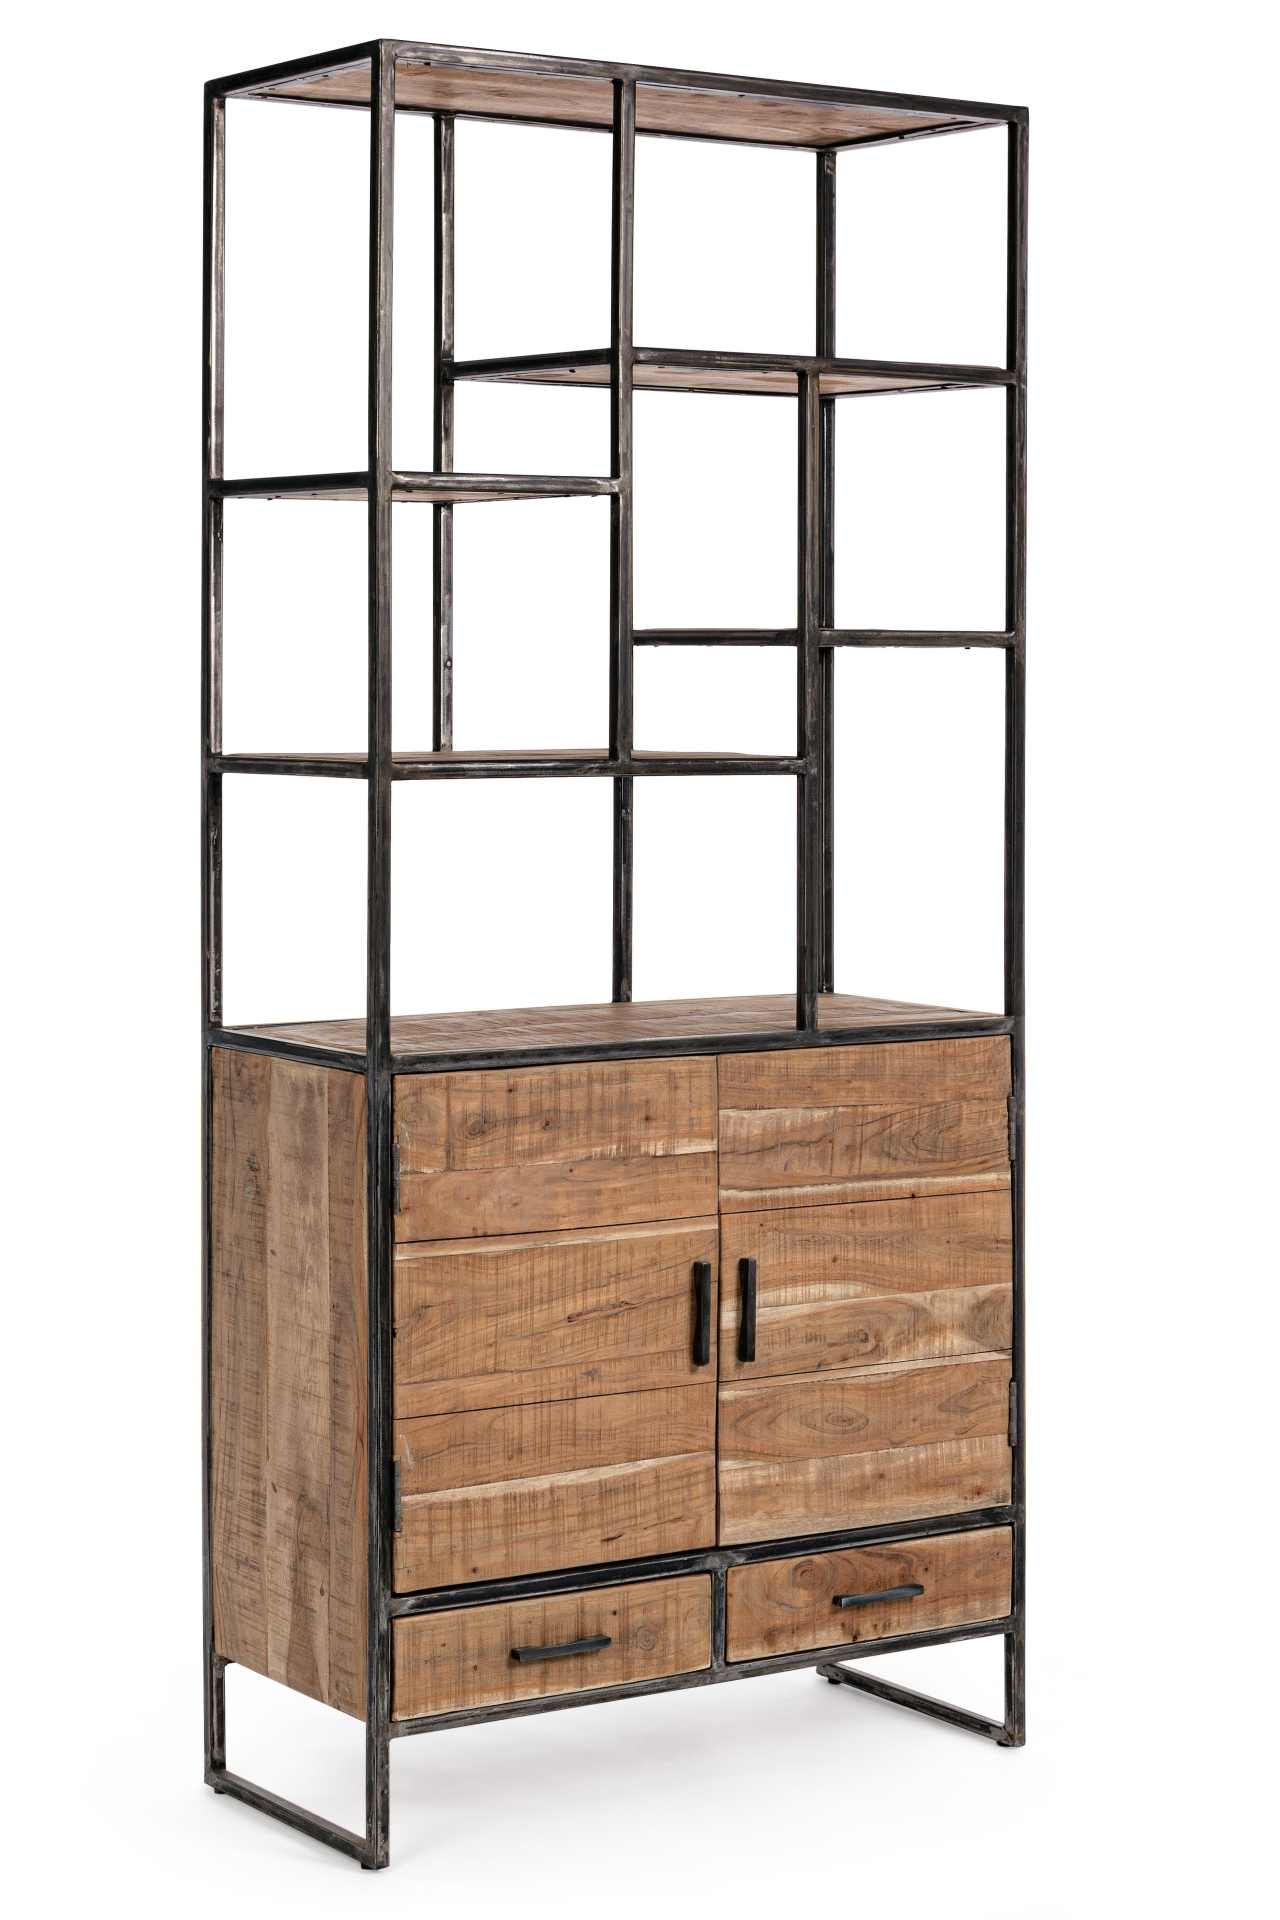 Das Bücherregal Elmer überzeugt mit seinem klassischen Design. Gefertigt wurde es aus Akazienholz, welches einen natürlichen Farbton besitzt. Das Gestell ist aus Metall und hat eine schwarze Farbe. Das Bücherregal verfügt über zwei Schubladen und zwei Tür